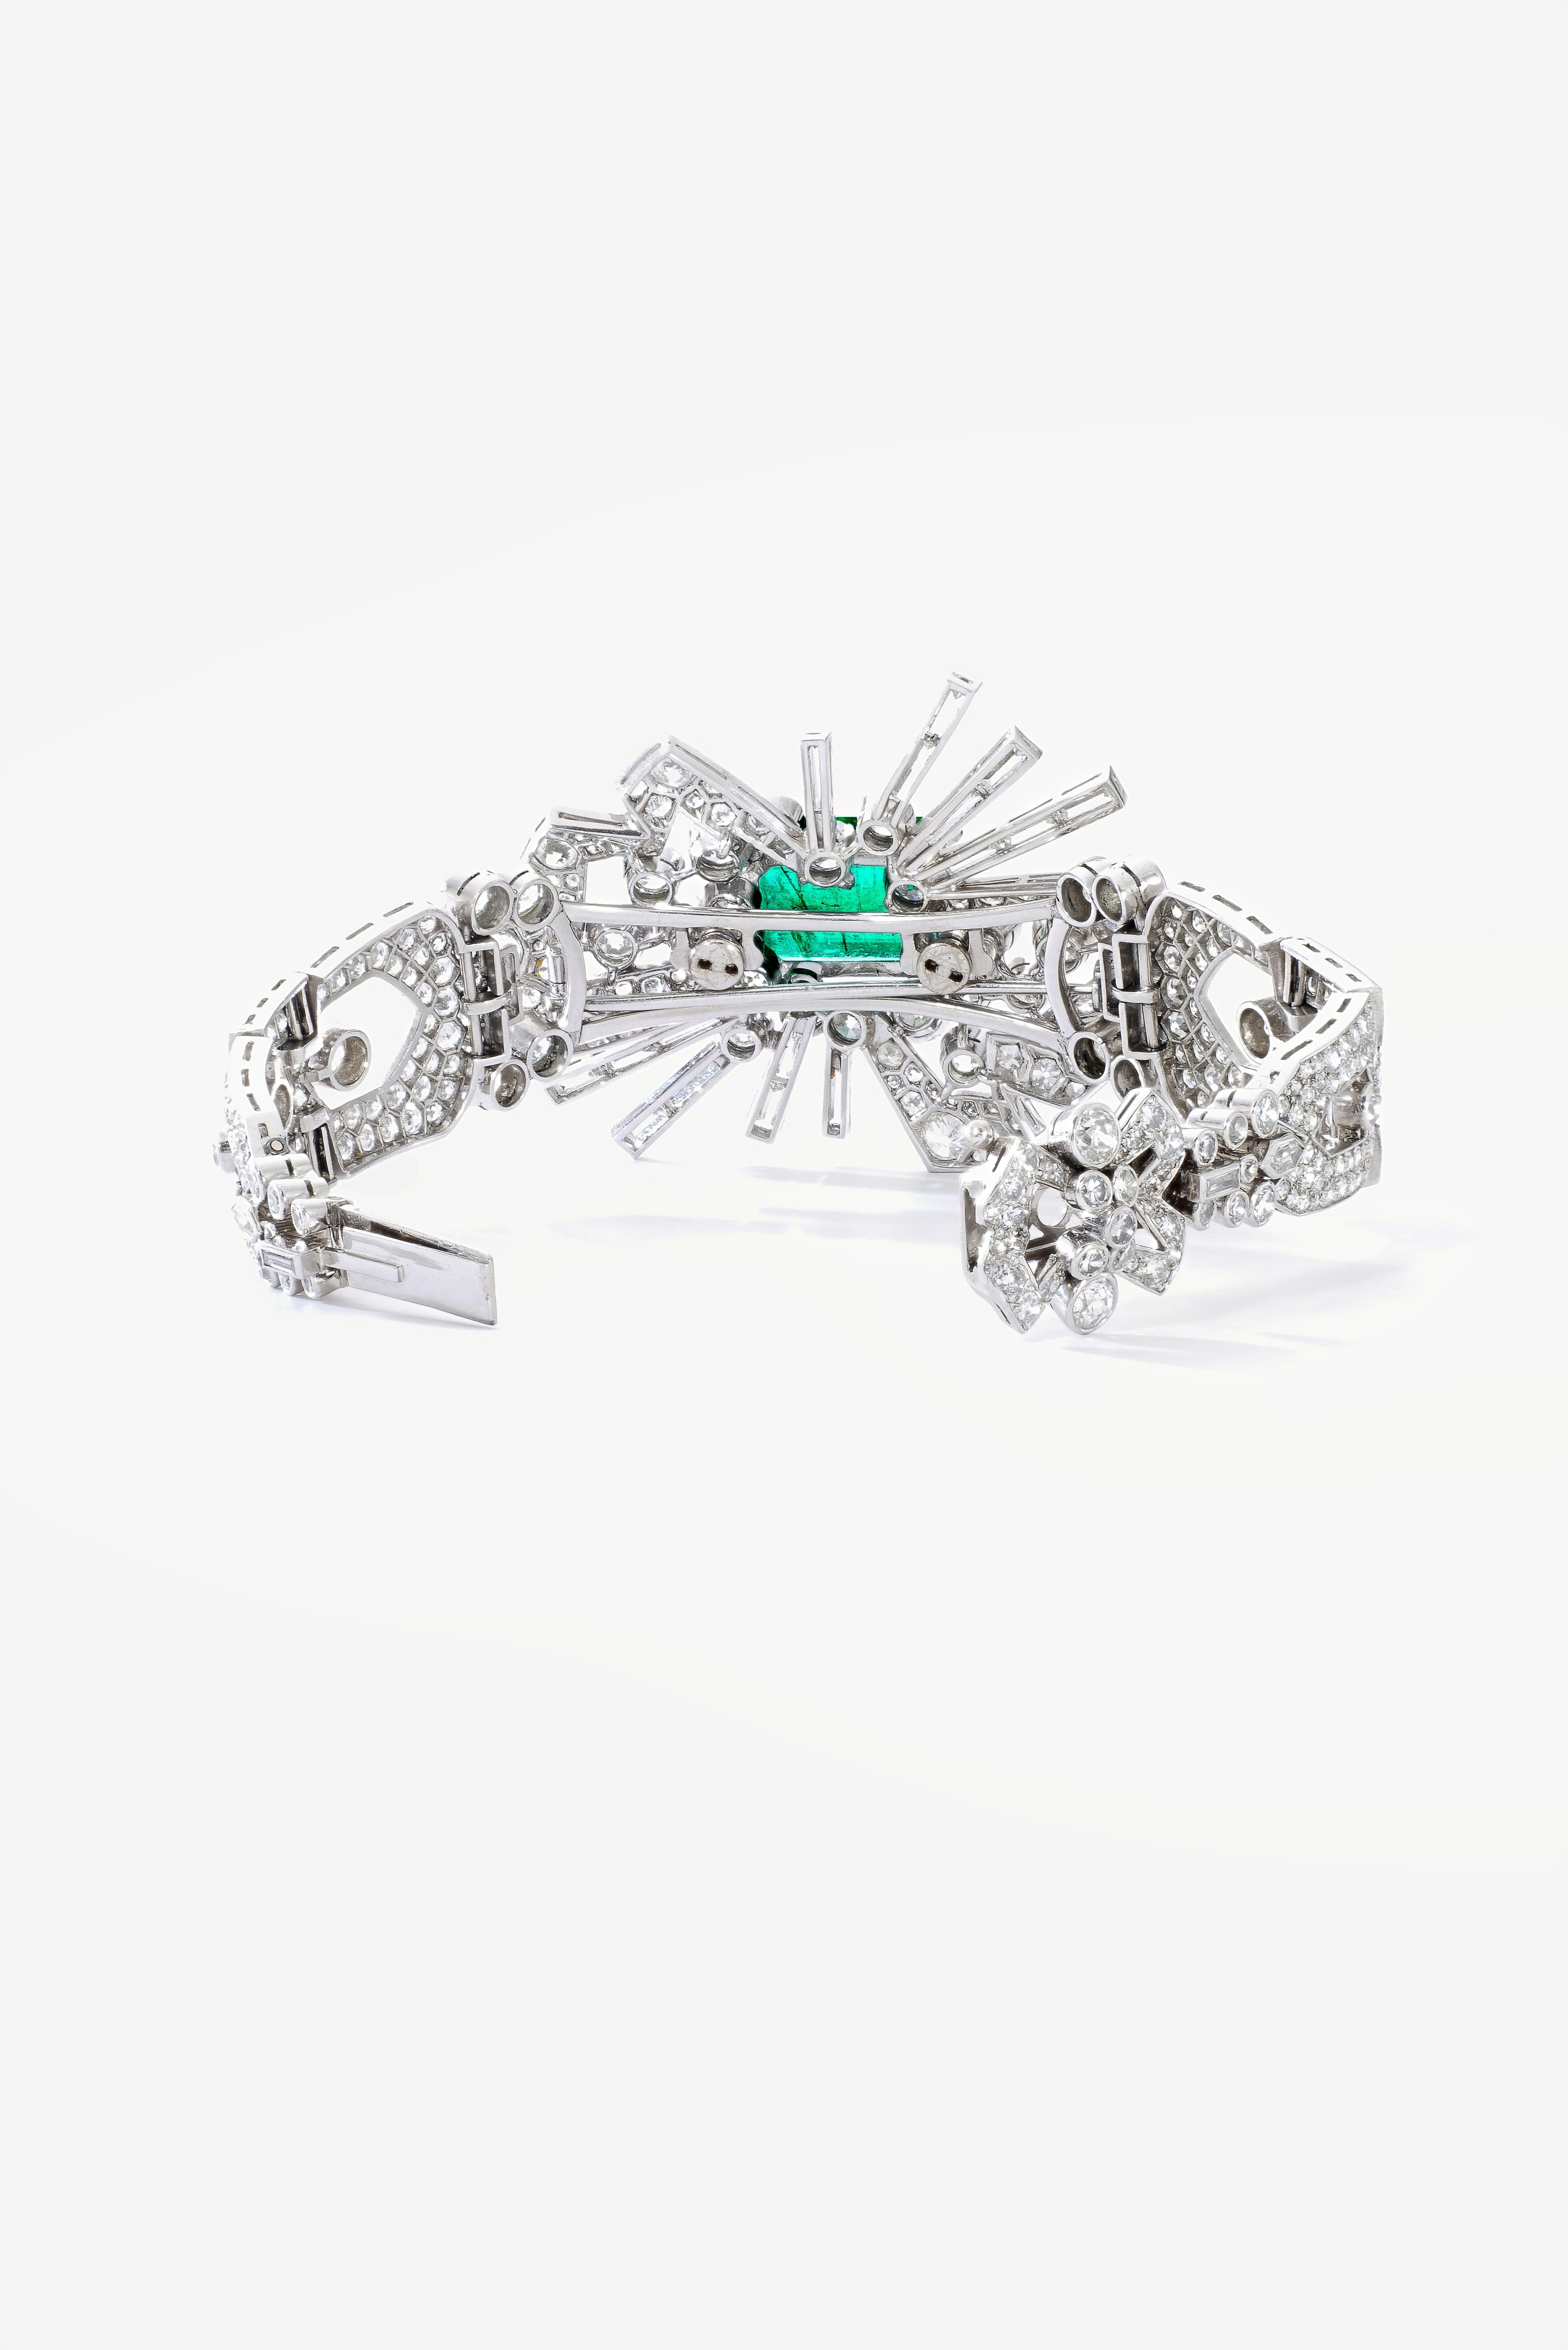 Emerald Cut 9.50 carat Emerald Diamond Platinum Bracelet convertible Brooch 1940S For Sale